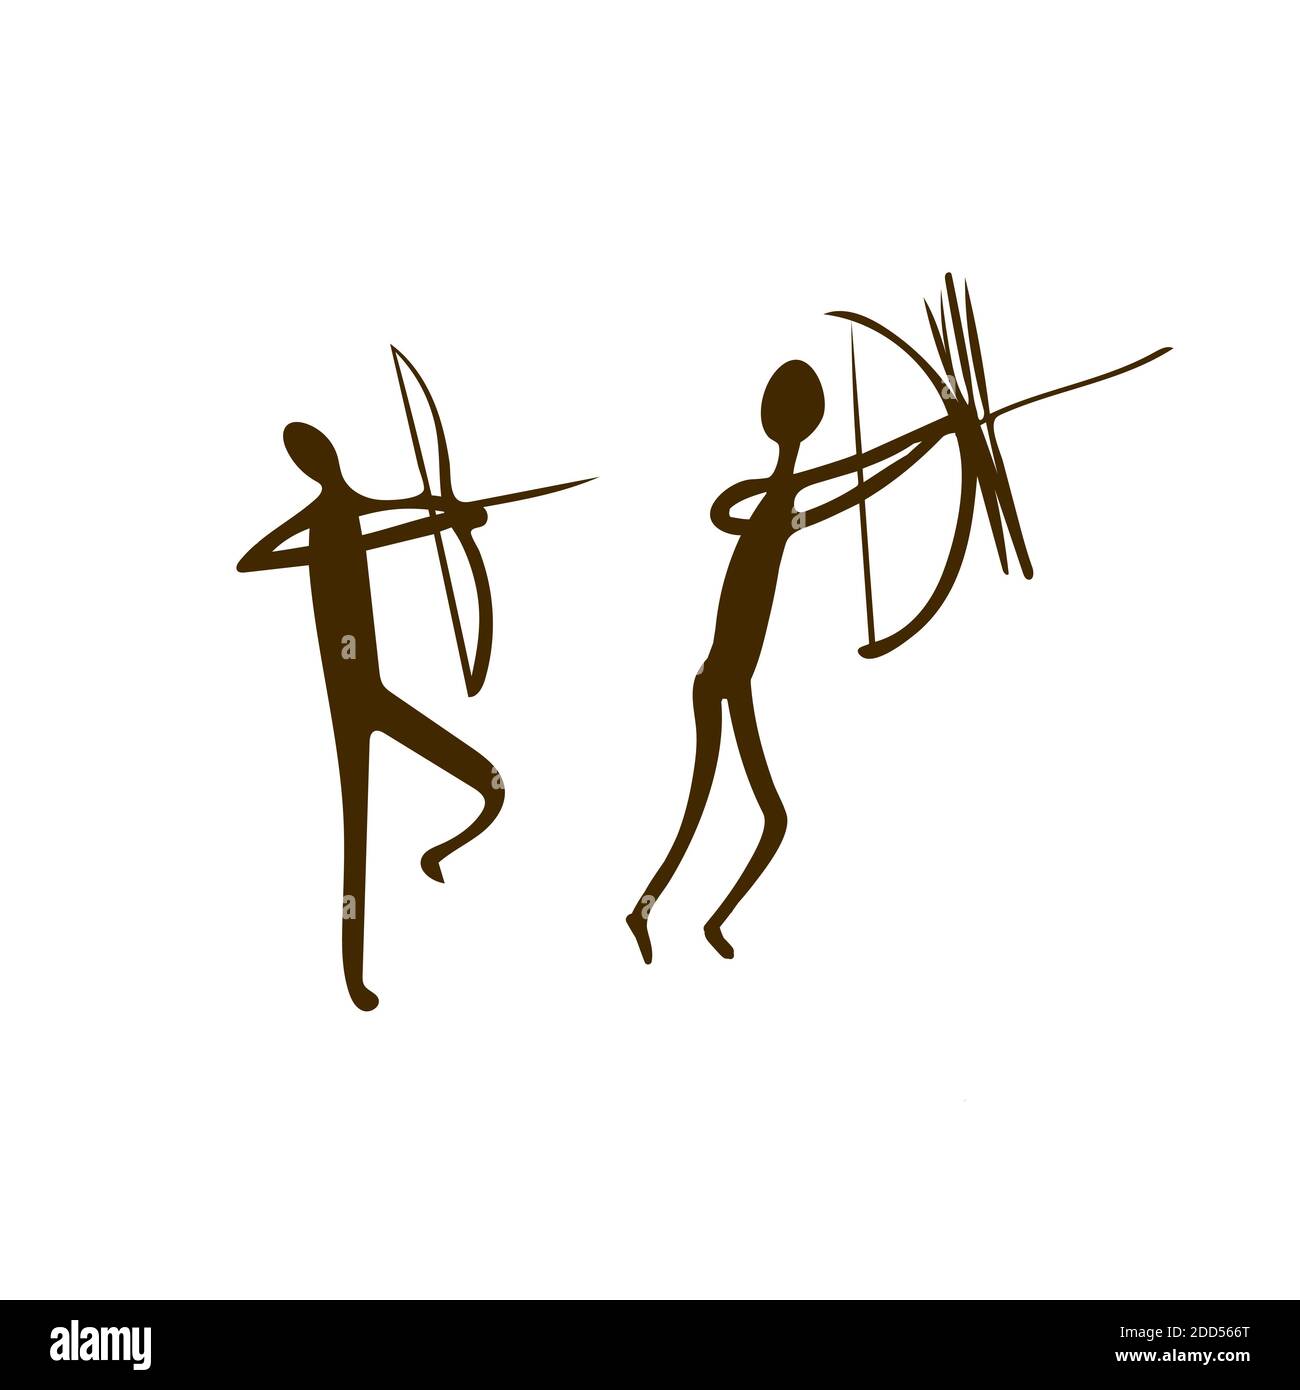 Hunters Cave Pitture - antichi petroglifici dipinti a mano. Cacciatori preistorici in uno stile tribale primitivo. Illustrazione vettoriale. Illustrazione Vettoriale